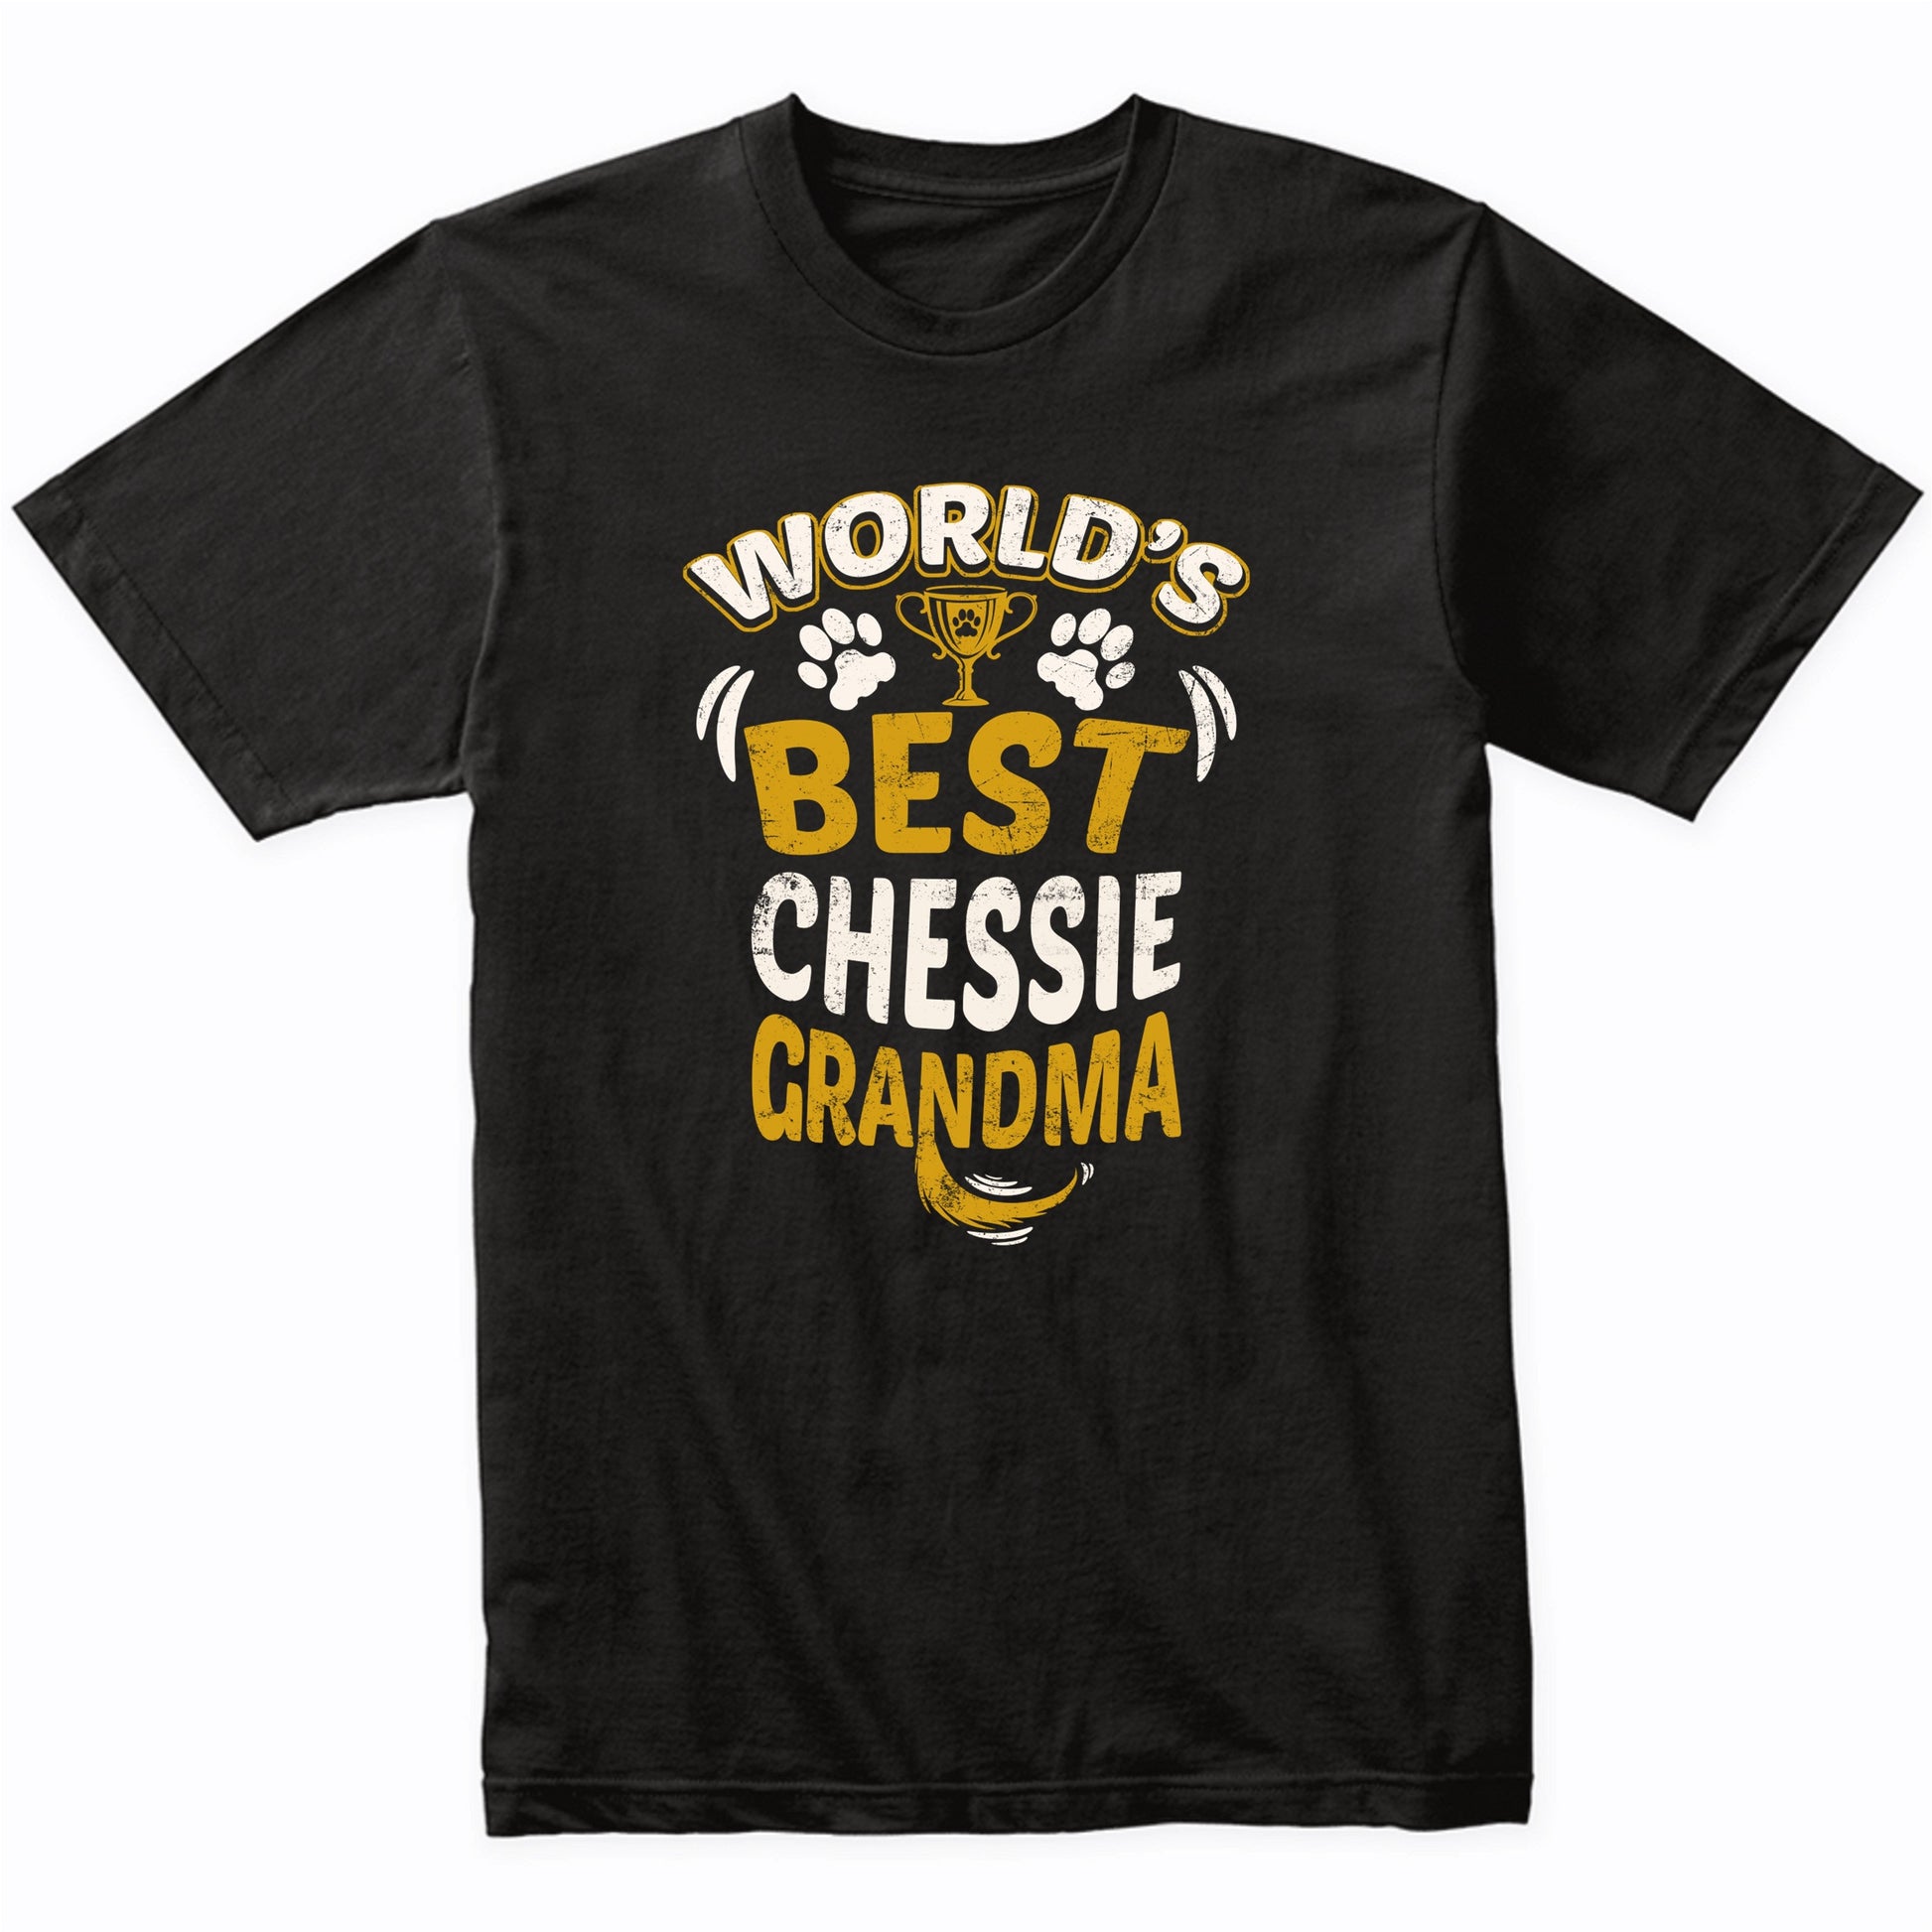 World's Best Chessie Grandma Graphic T-Shirt